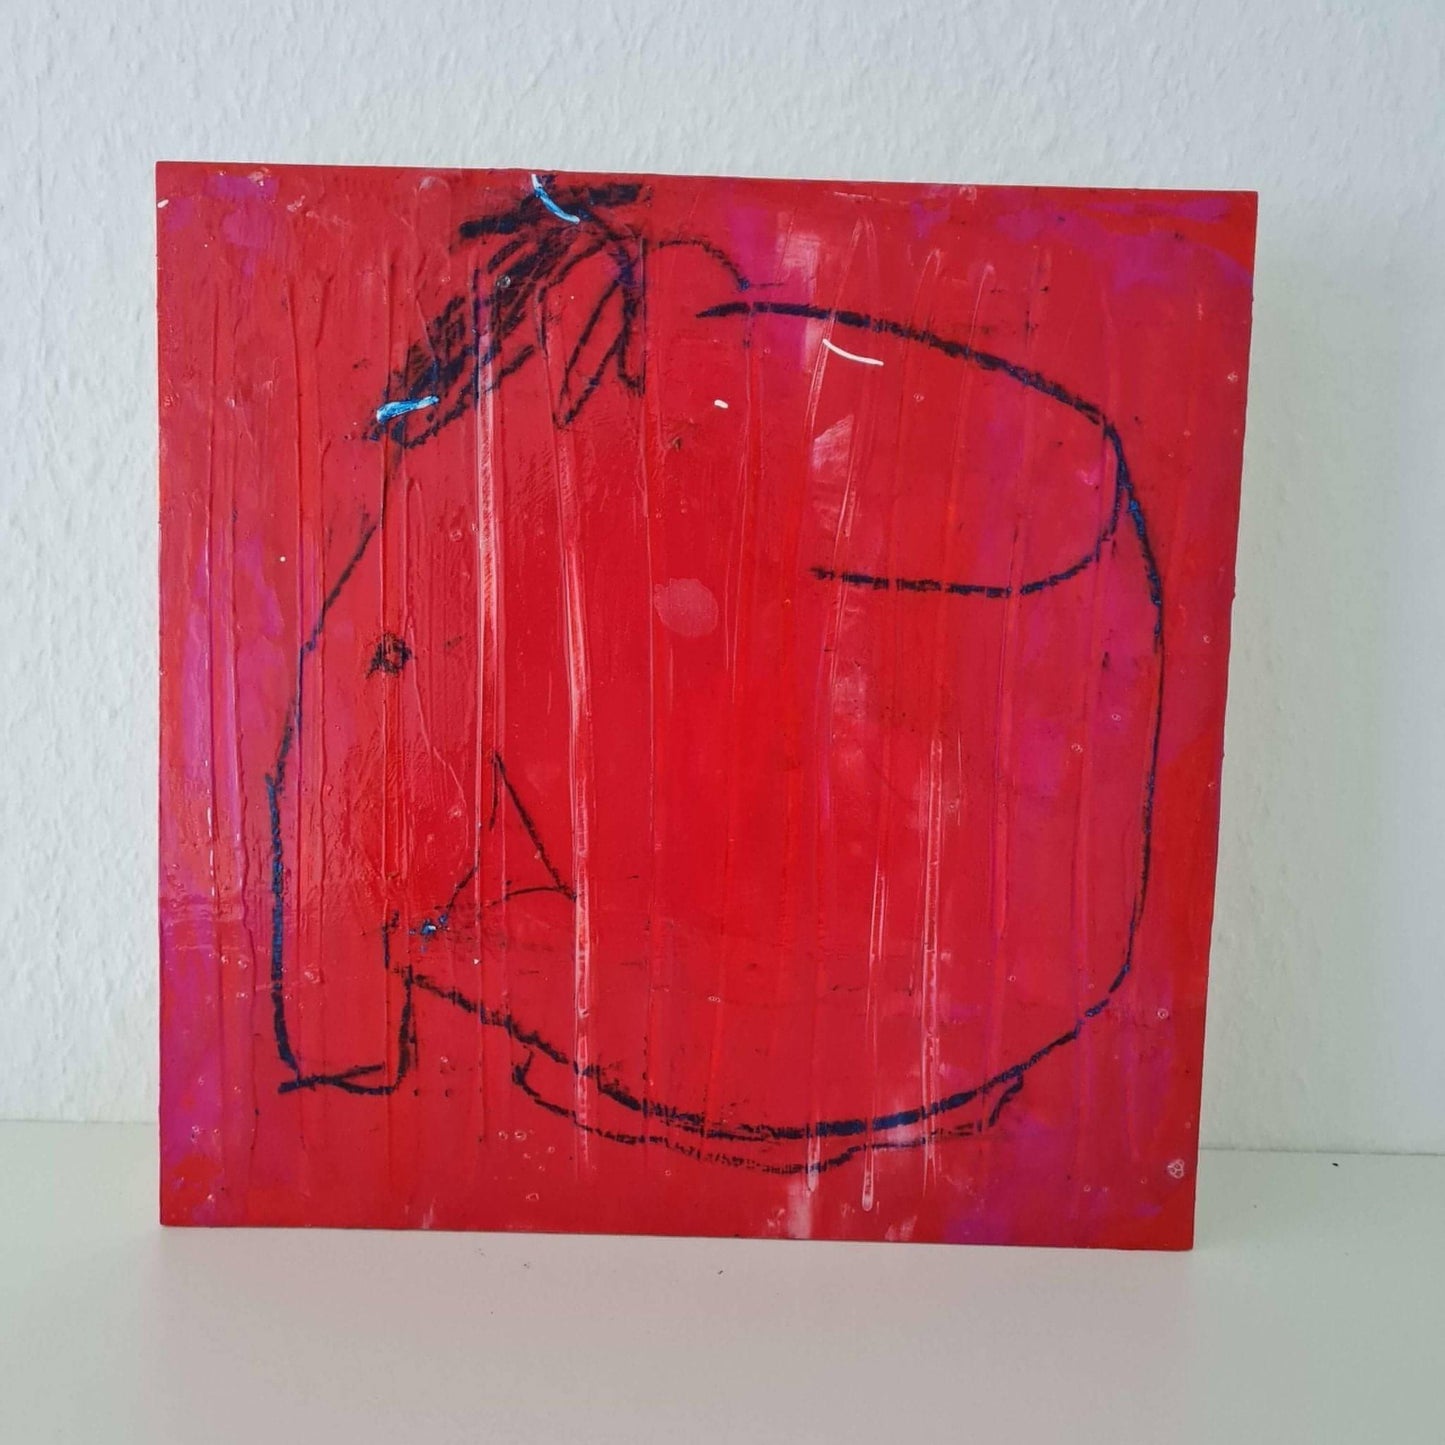 "Elefantenwitze" - Ein abstraktes Kunstwerk auf Holzkörper Abstrakte Bilder & moderne Auftragsmalerei, abstrakte große bilder online kaufen, Auftrags Malere